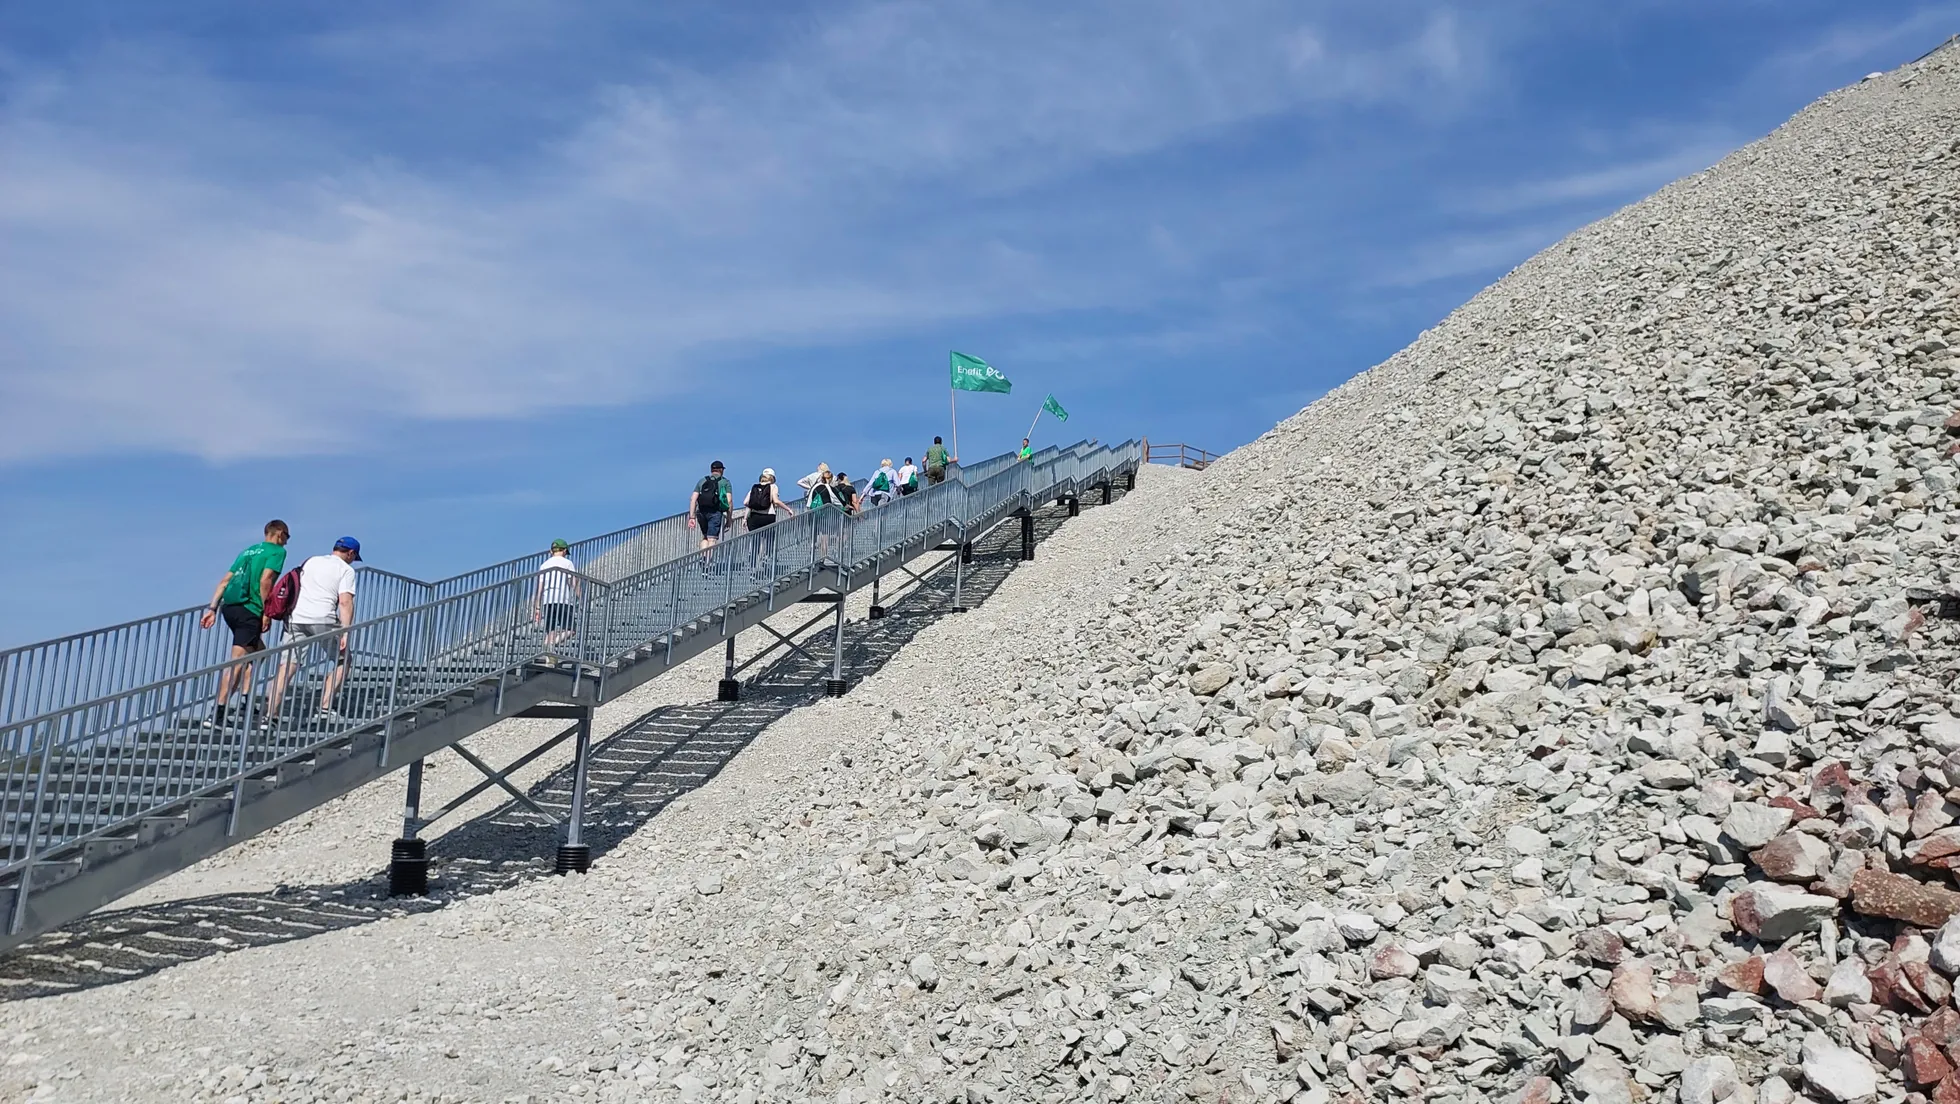 Чтобы забраться на террикон шахты "Estonia", придется по пешеходной дорожке и лестнице с перилами подняться на высоту более 60 метров над подножием. Зато с вершины в ясный день можно увидеть большую часть Ида-Вирумаа.